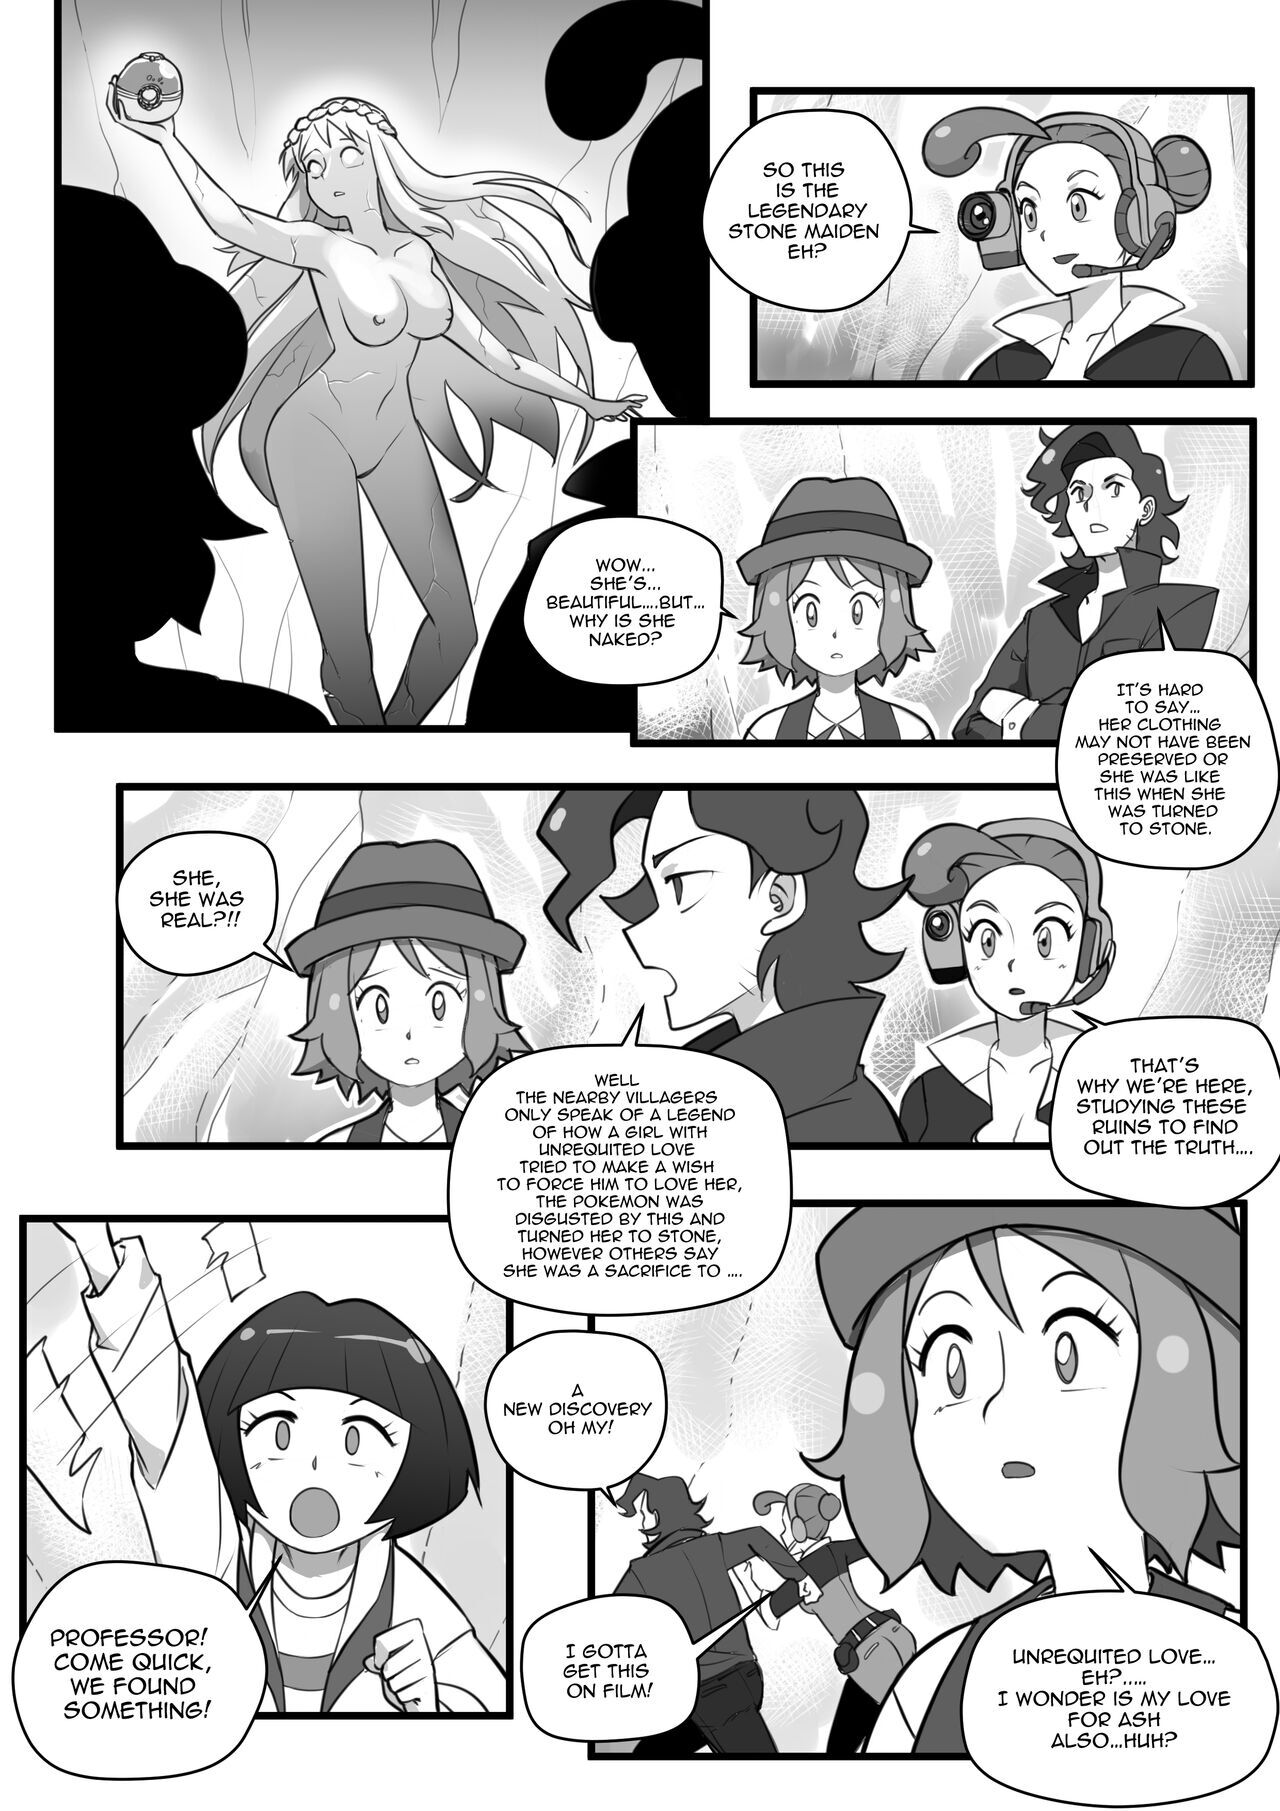 1280px x 1811px - Pokemon Hentai - Page 3 - Hentai Manga, Doujins & XXX